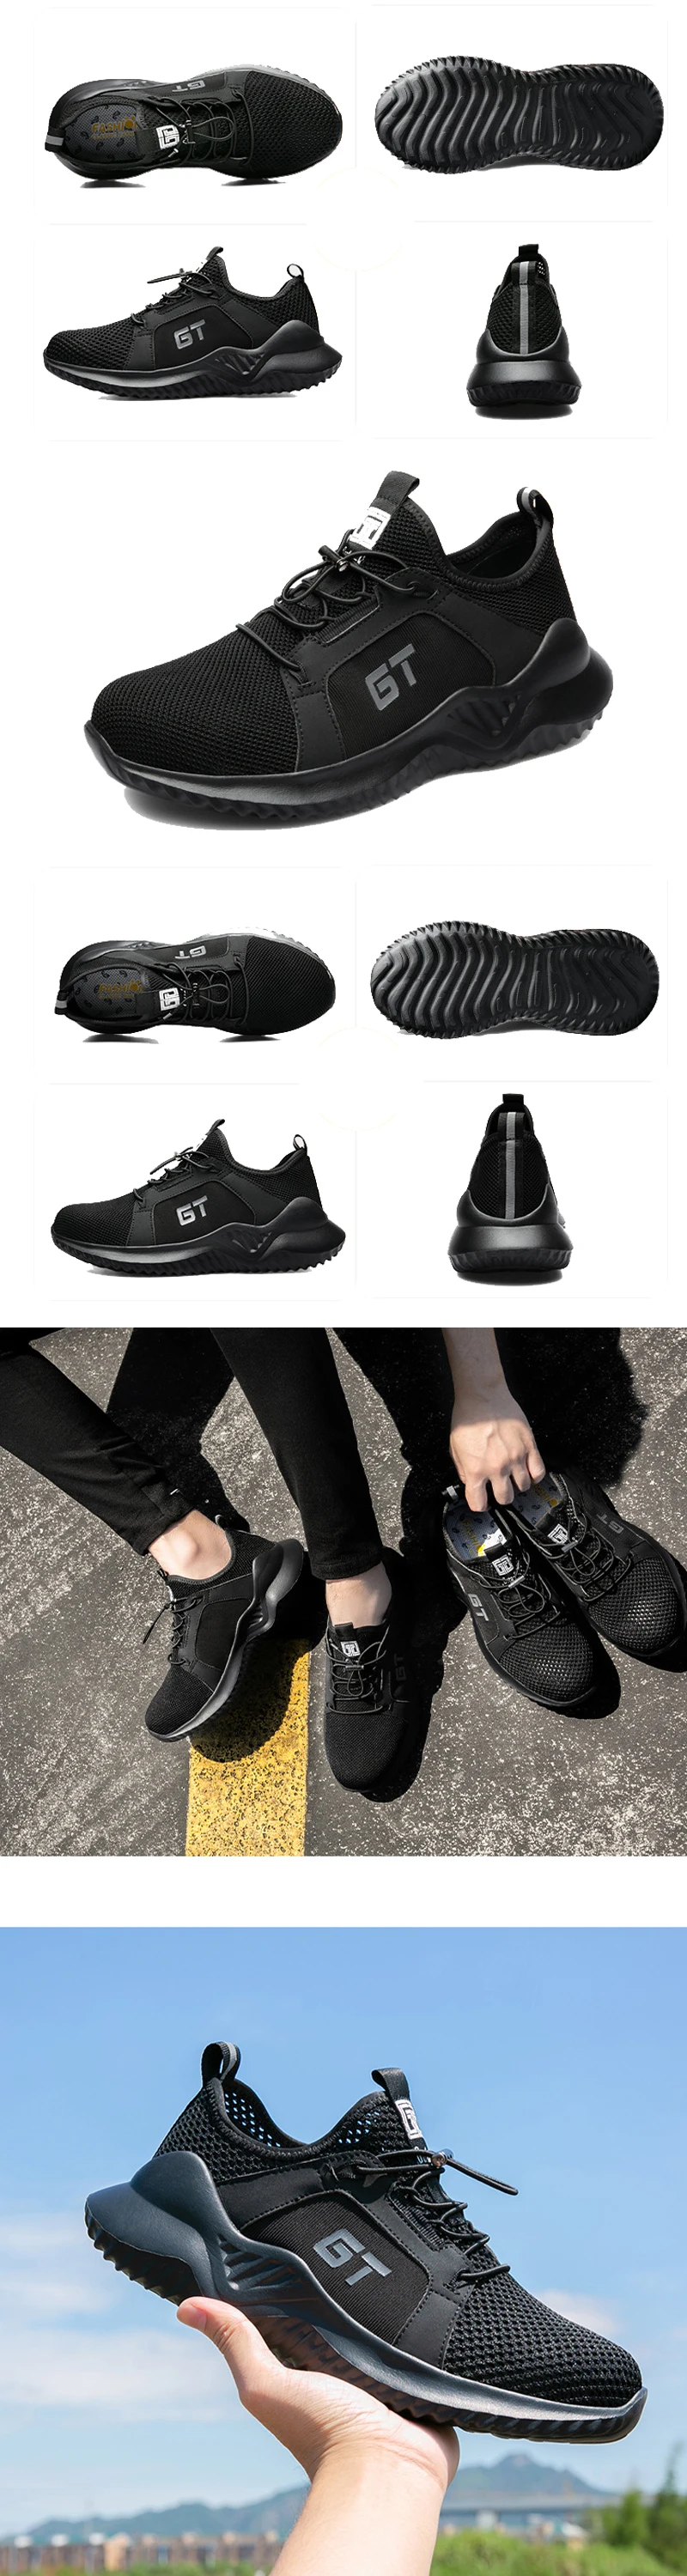 Обувь со стальным носком Защитная обувь промышленная Строительная Рабочая безопасная легкая Строительная рабочая обувь для пеших прогулок тропа тенниса